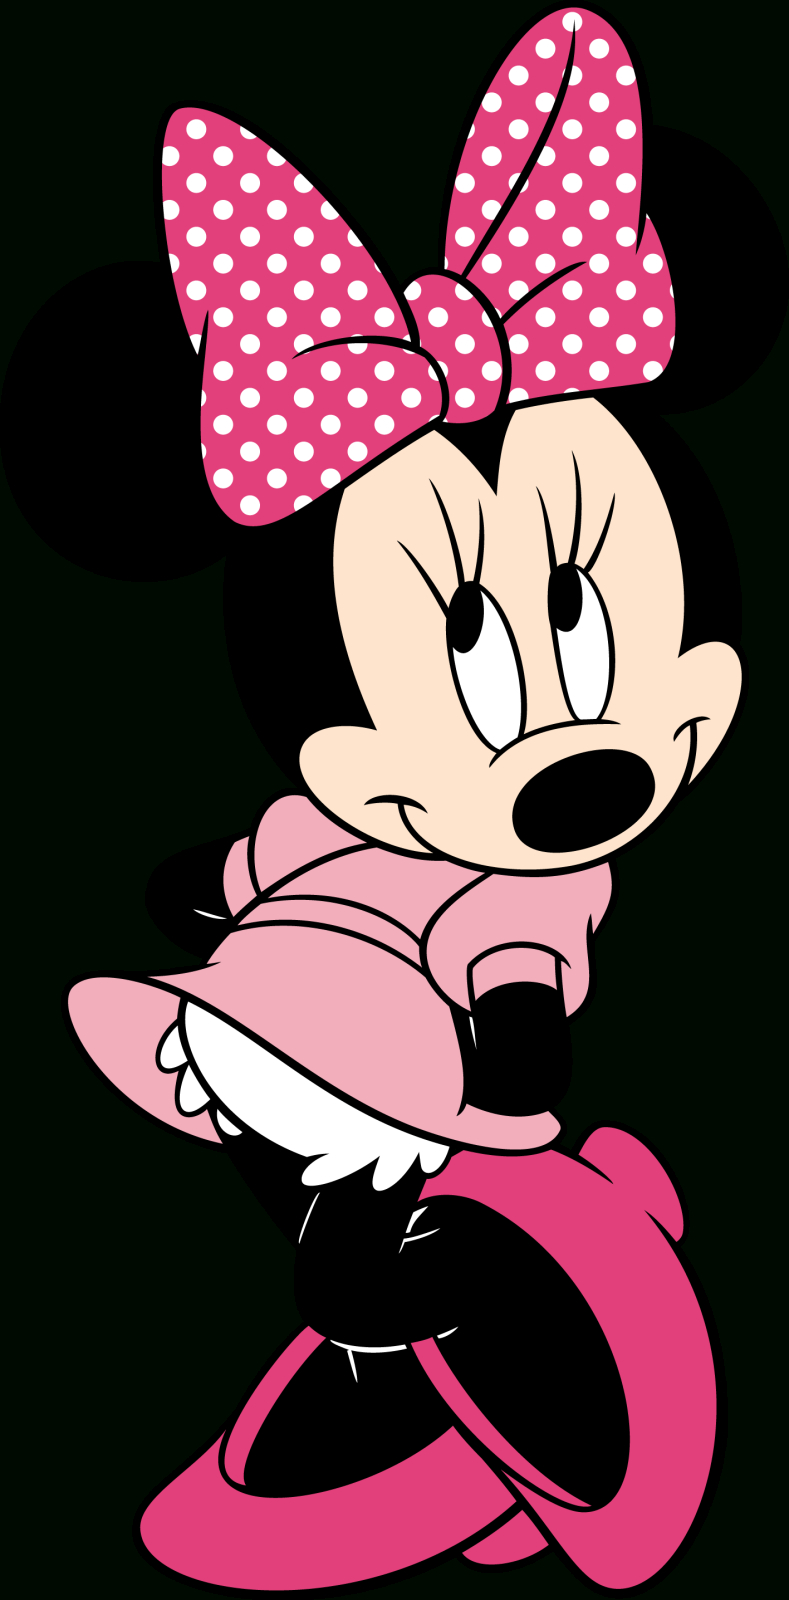 Dessins En Couleurs À Imprimer : Minnie Mouse, Numéro : 255003 intérieur Dessin A Imprimer Minnie